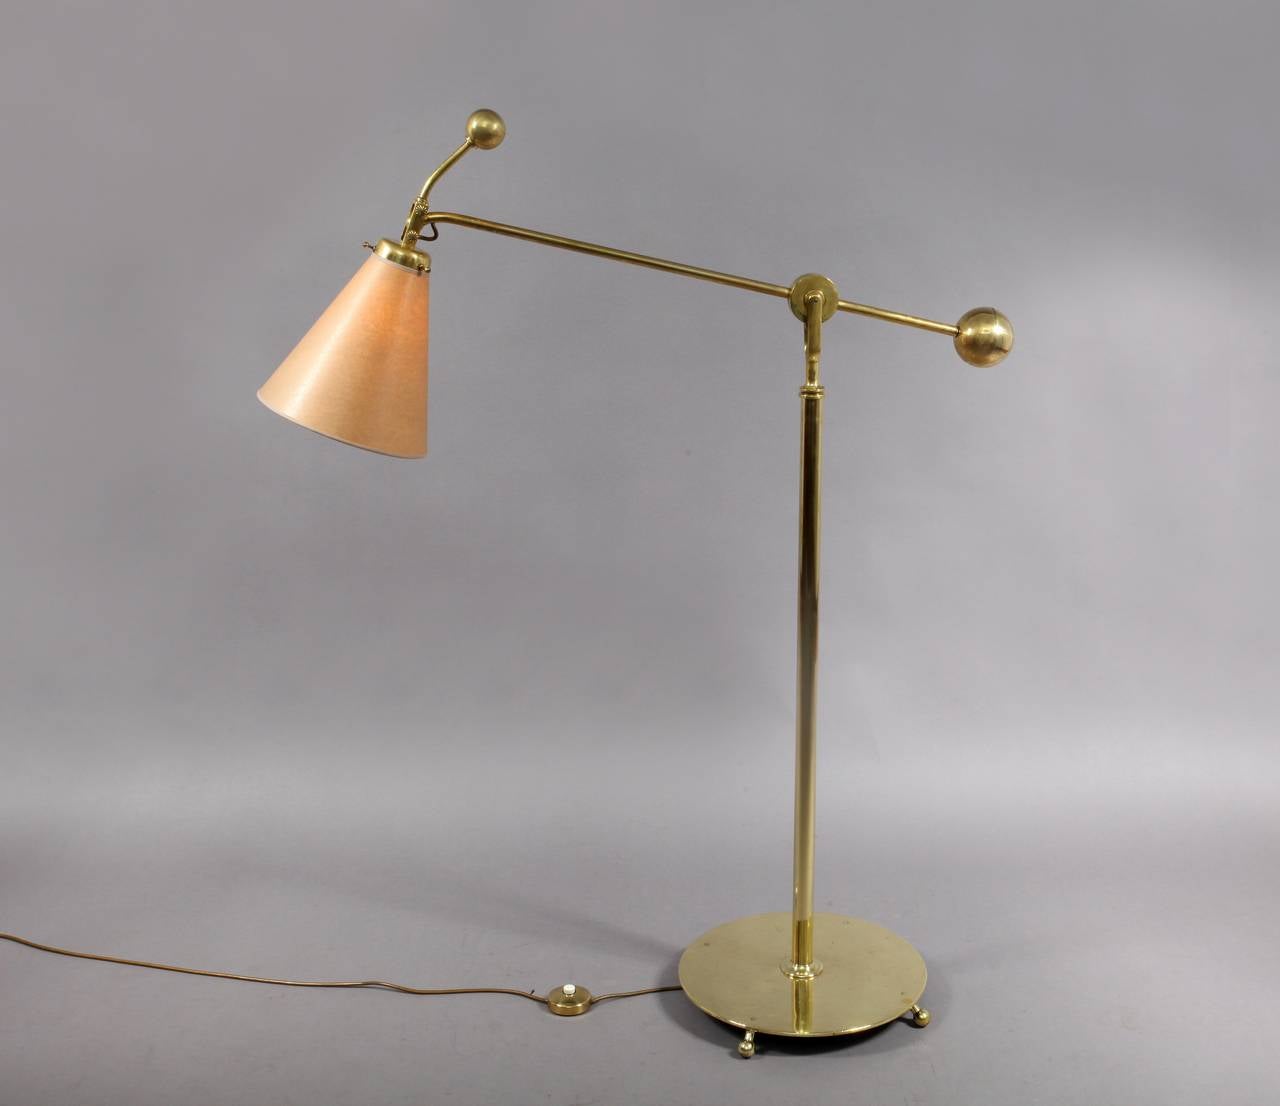 Austrian Amazing Floor Lamp Production Erzgiesserei A.G., Vienna, 1935